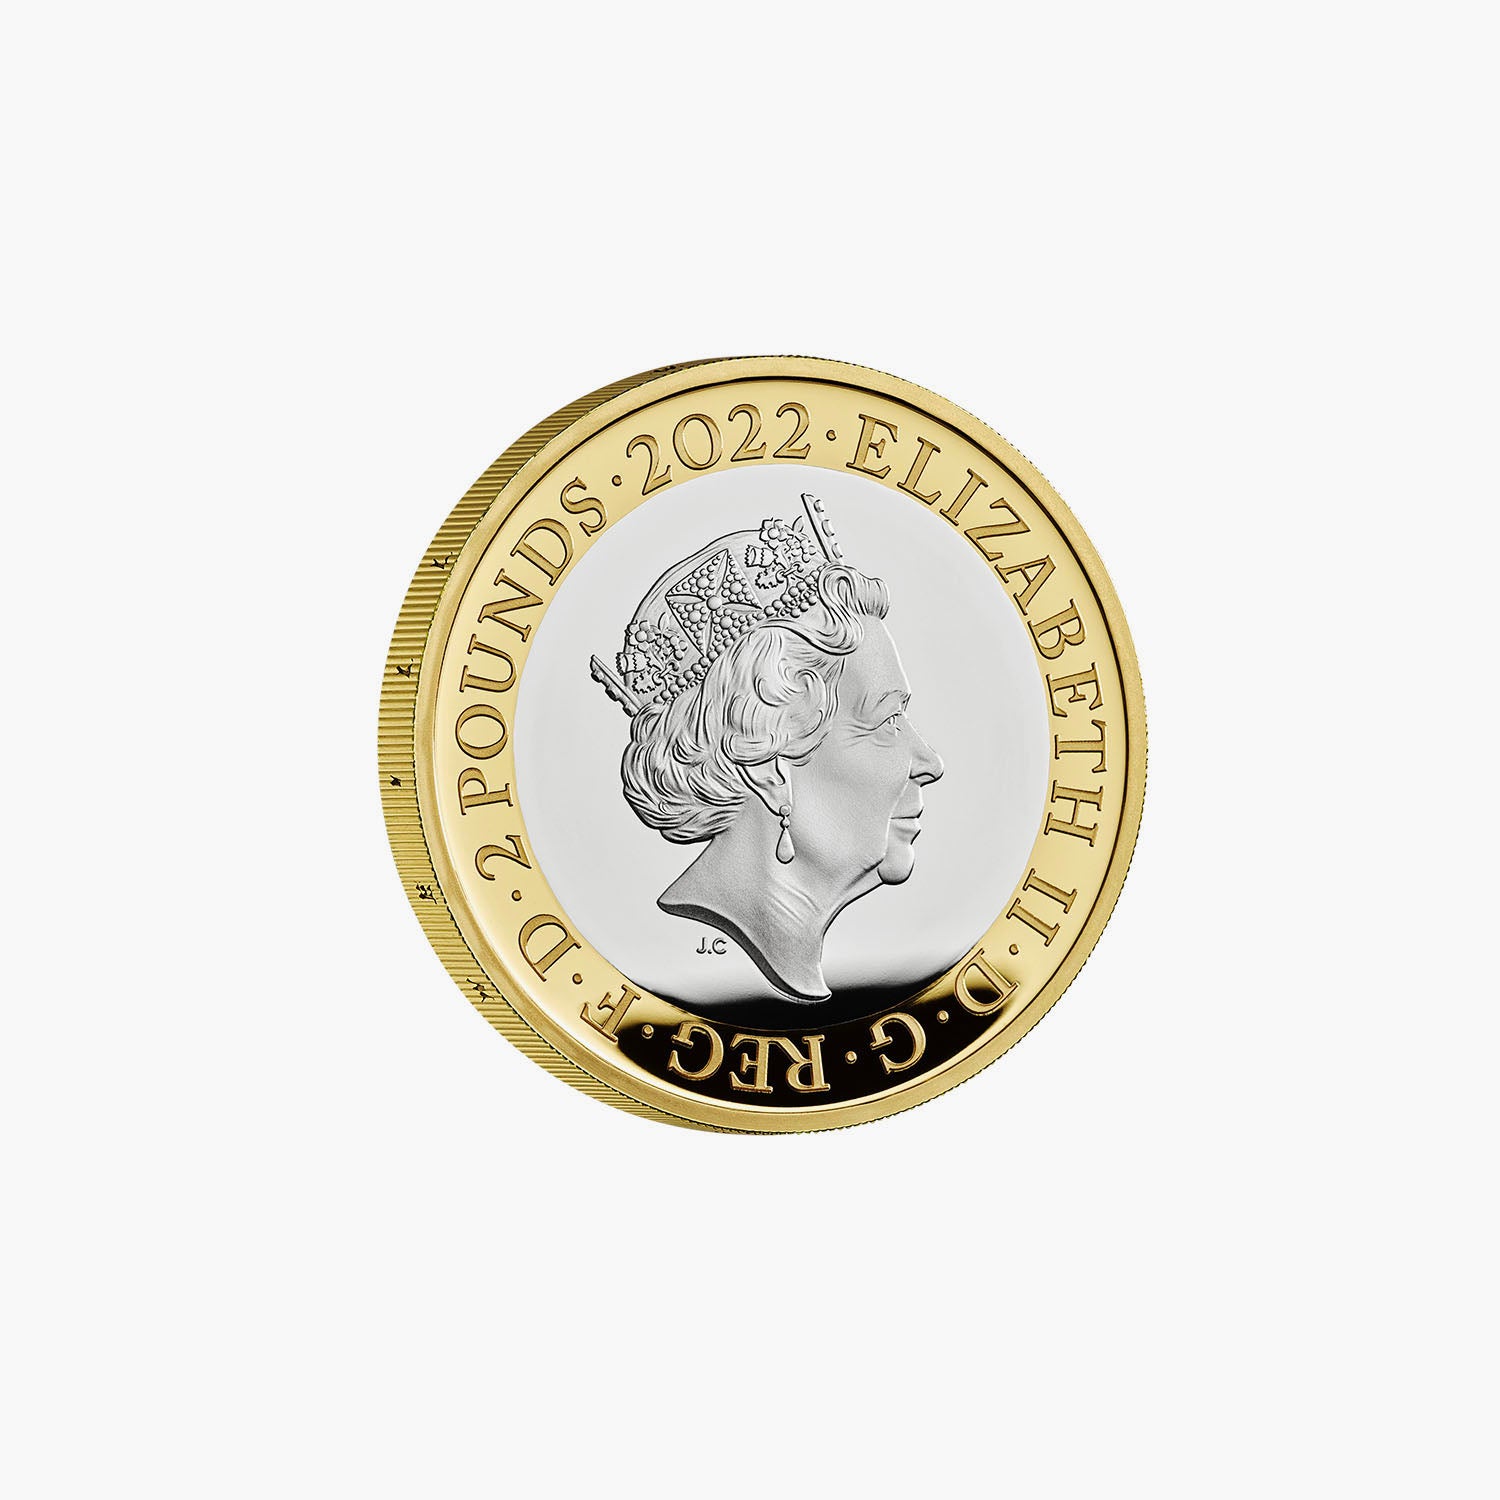 デイム ベラ リンの生涯と遺産を祝う 2022 英国 £2 シルバー プルーフ コイン